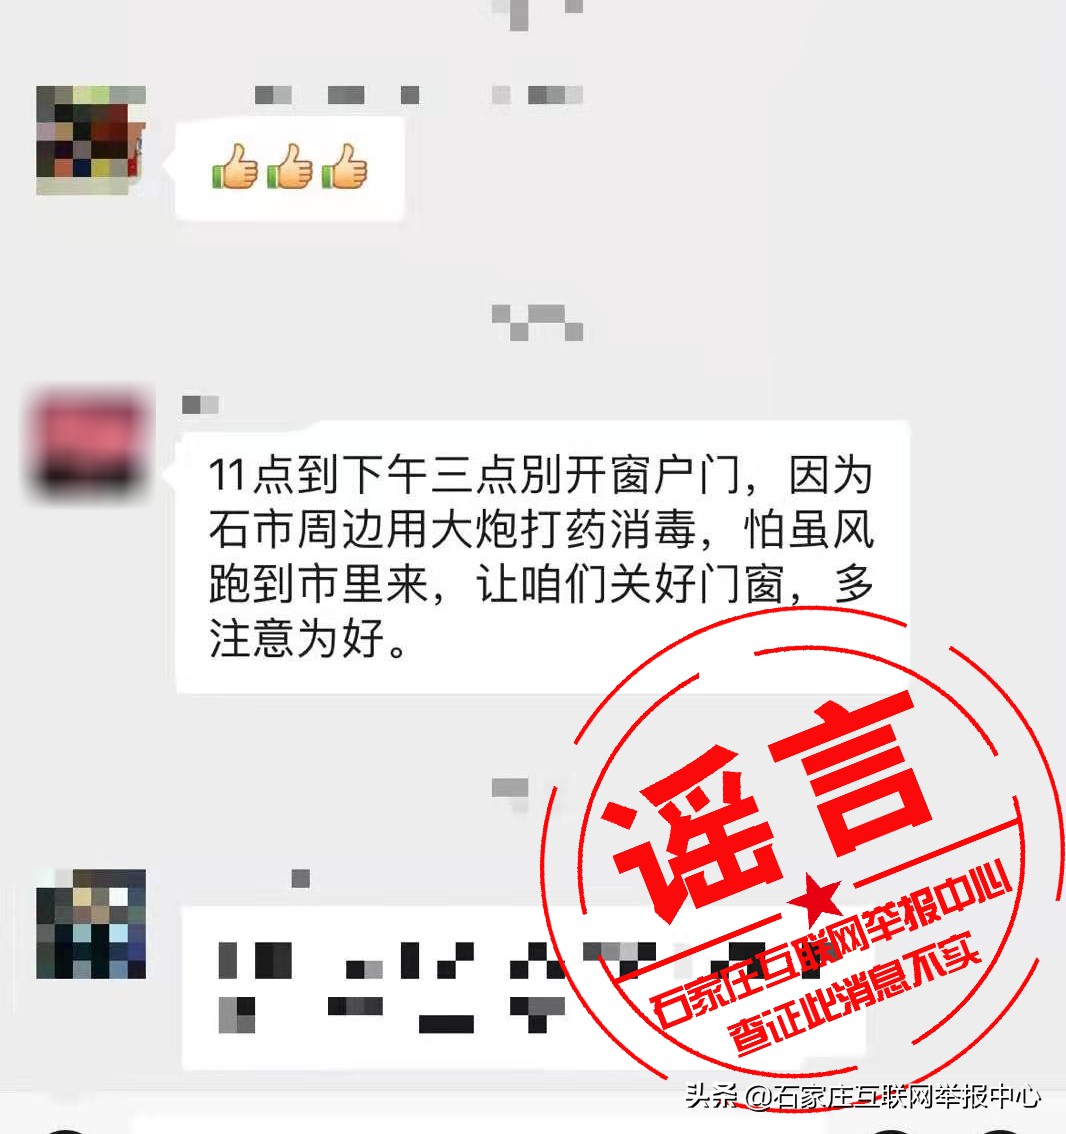 网传“石家庄周边将用大炮打药消毒”？谣言！别信！